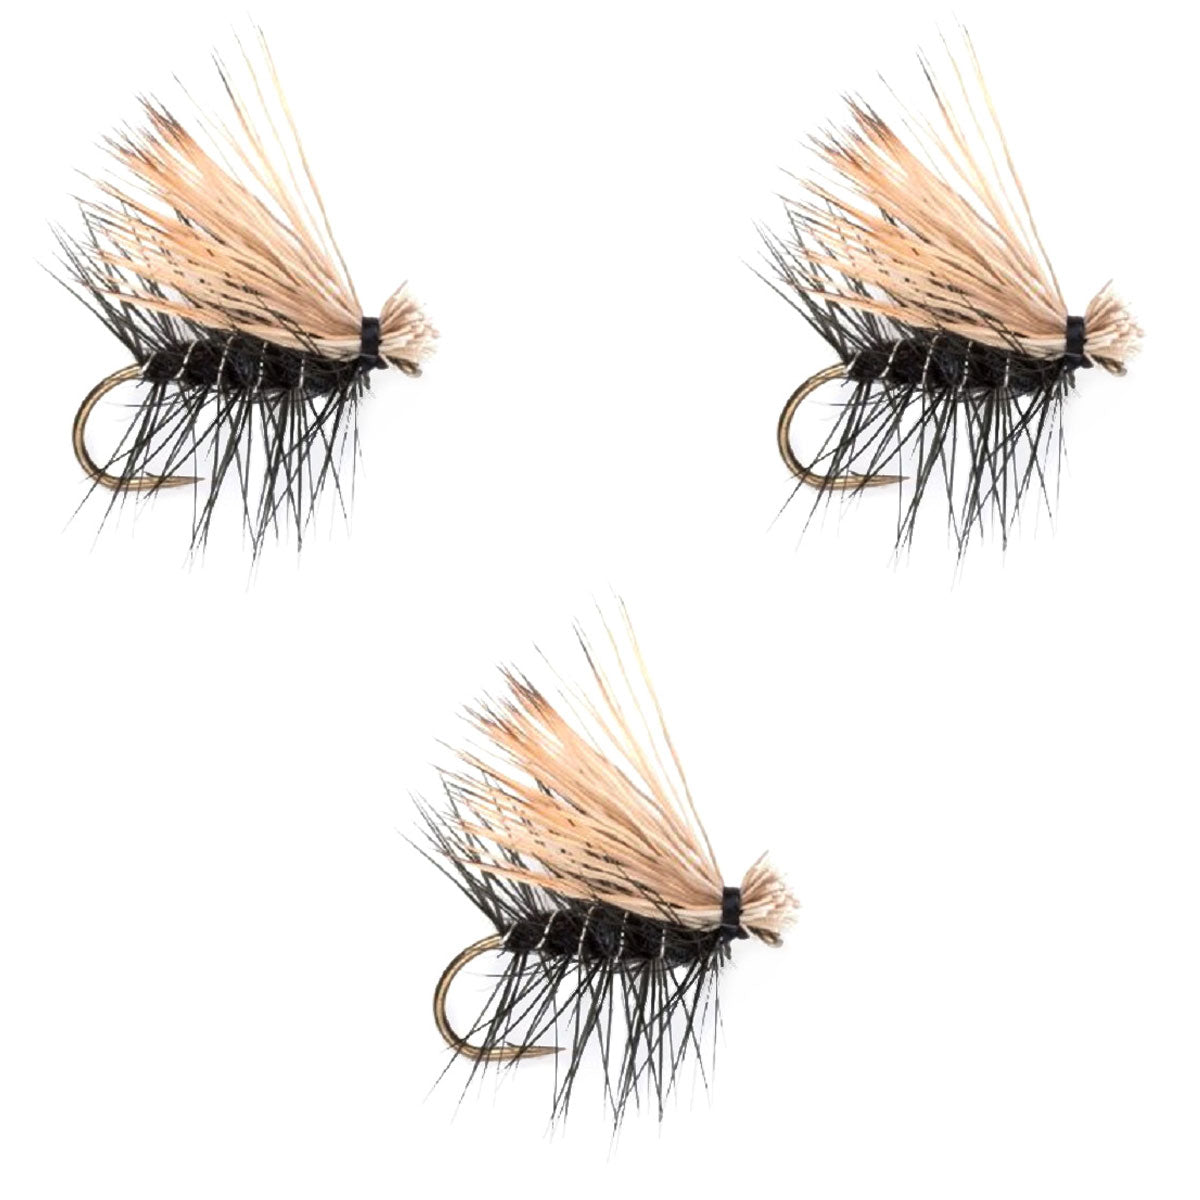 Paquete de 3 moscas secas para trucha Caddis Classic de pelo de alce negro, tamaño 18